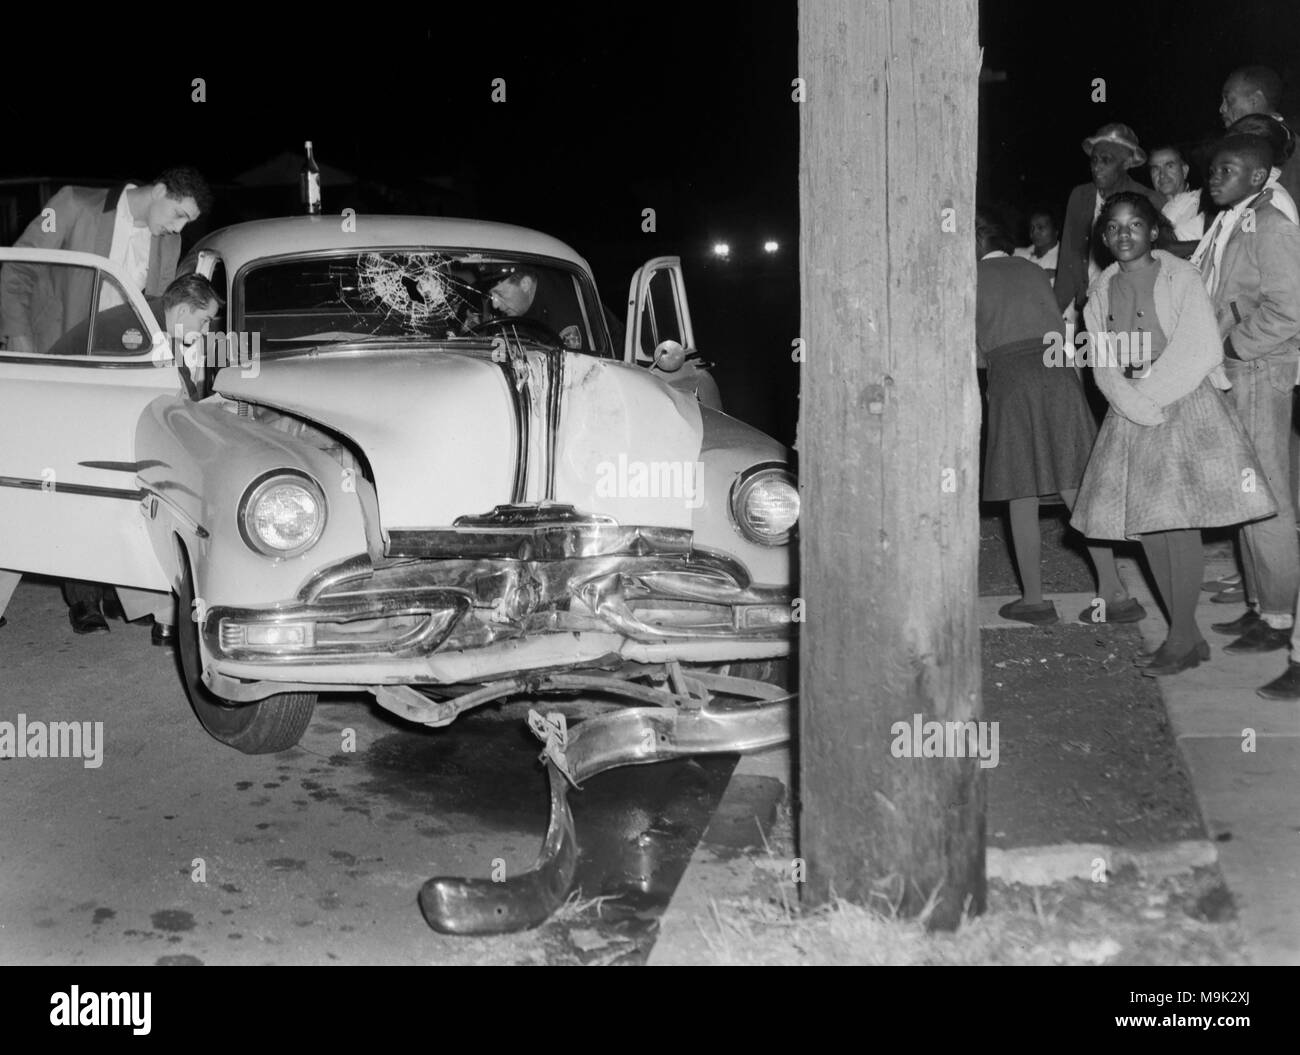 Mit Schaulustigen beobachten, ein Fahrer von einem abgestürzten Auto in Oakland, Kalifornien extrahieren, Ca. 1961. Eine Bierflasche sitzt auf dem Dach des Autos thront. Stockfoto